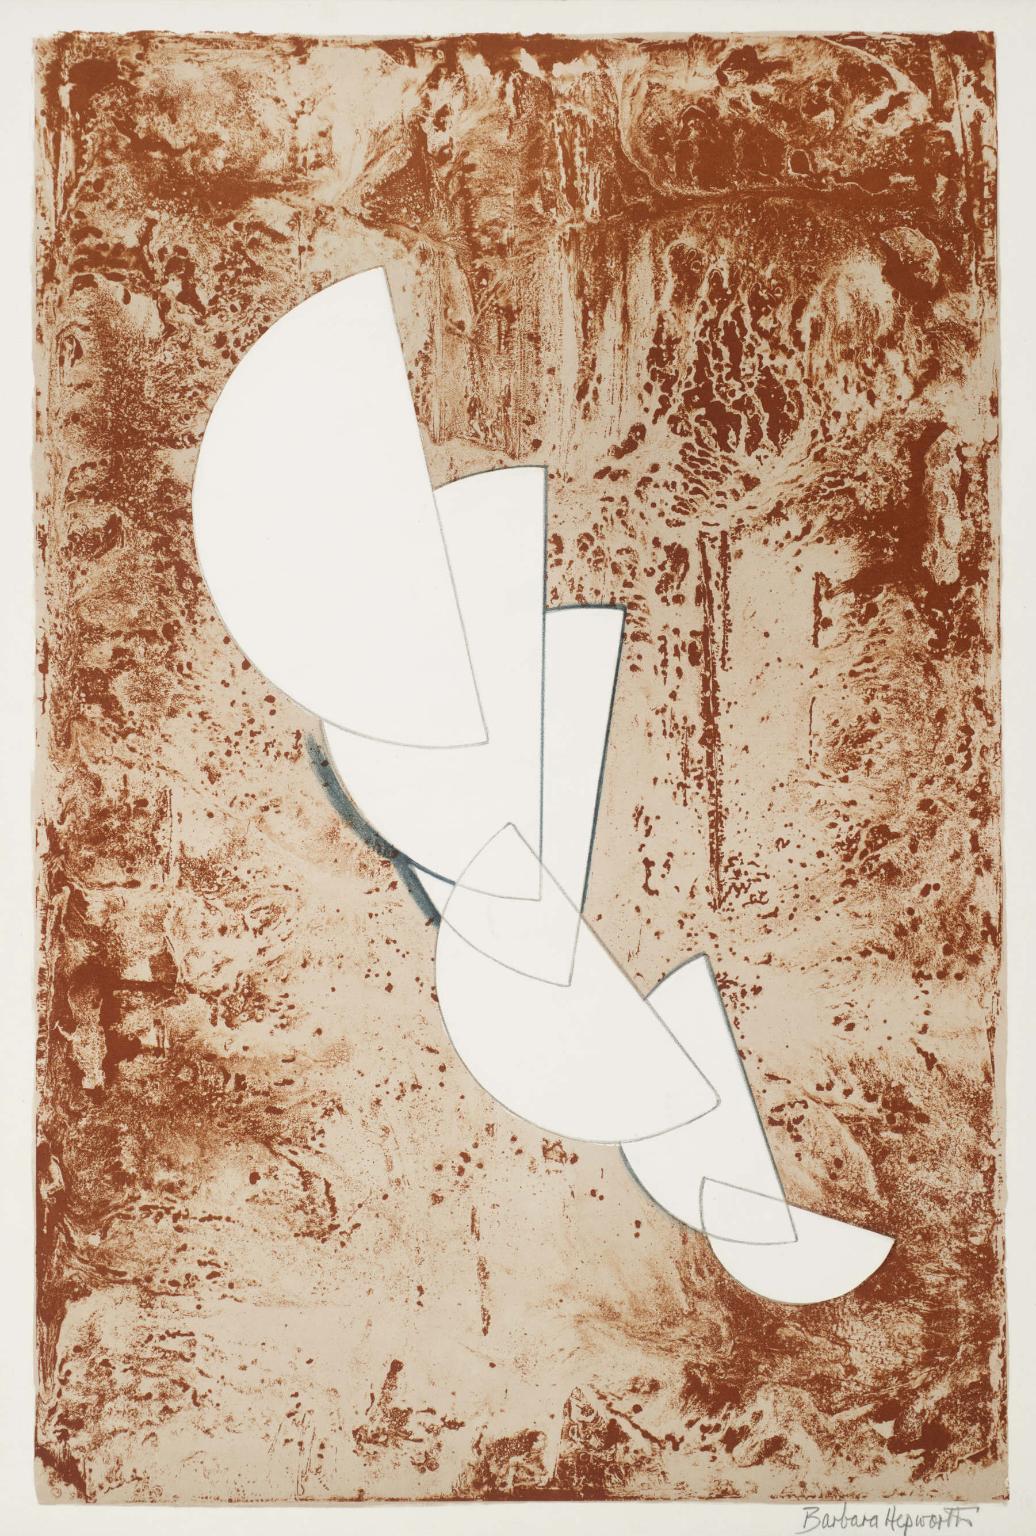 Fragment de la suite égée (1969) (signé) - Print de Barbara Hepworth